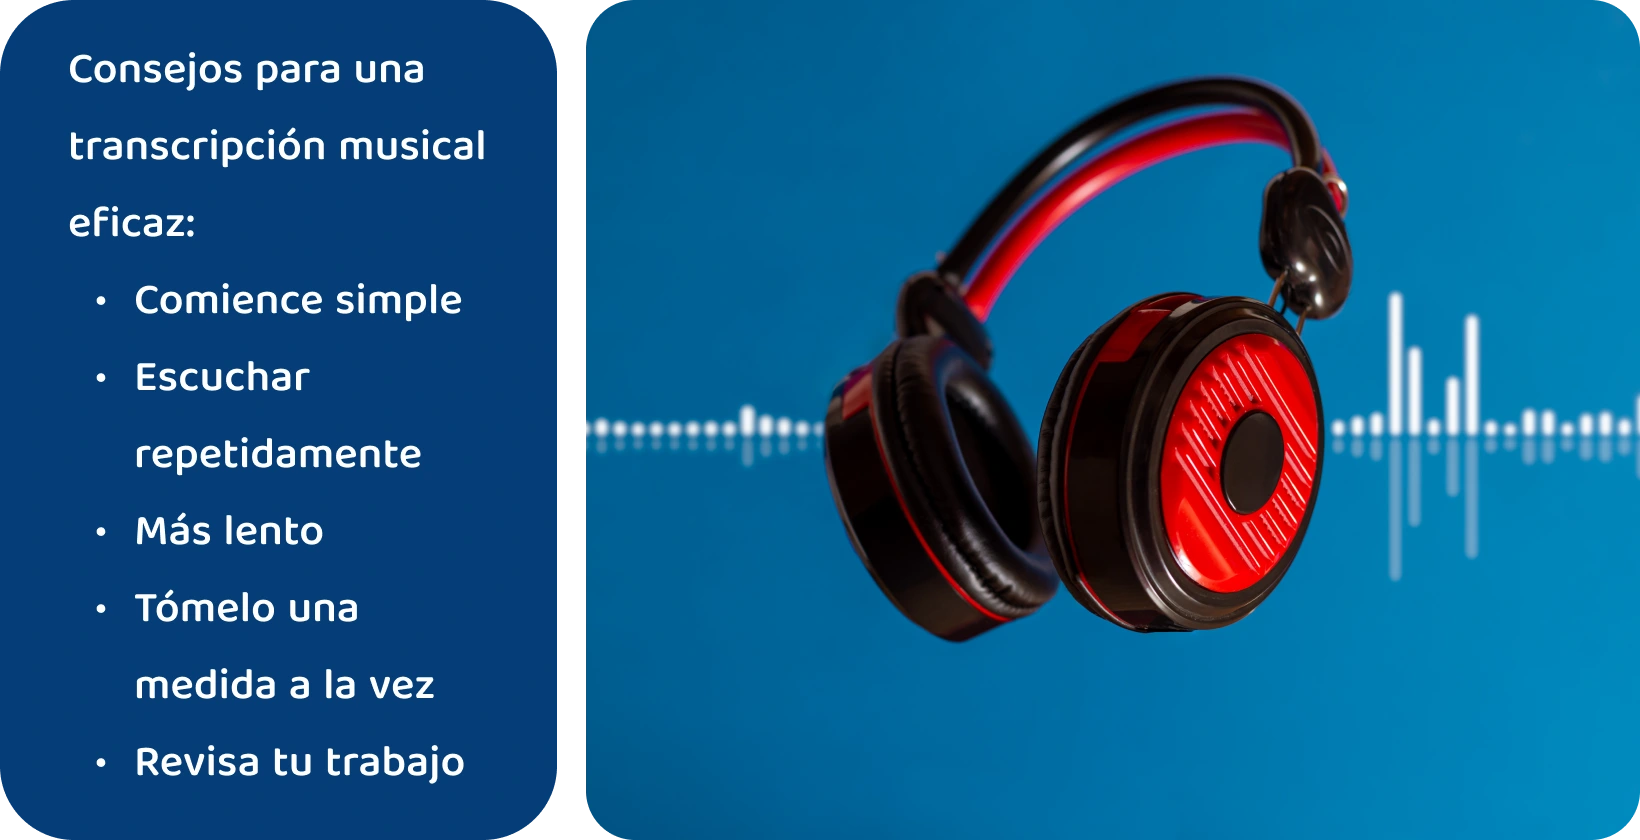 Auriculares con un fondo de forma de onda, que representan herramientas para mejorar la transcripción de música a través de una escucha concentrada y repetida.